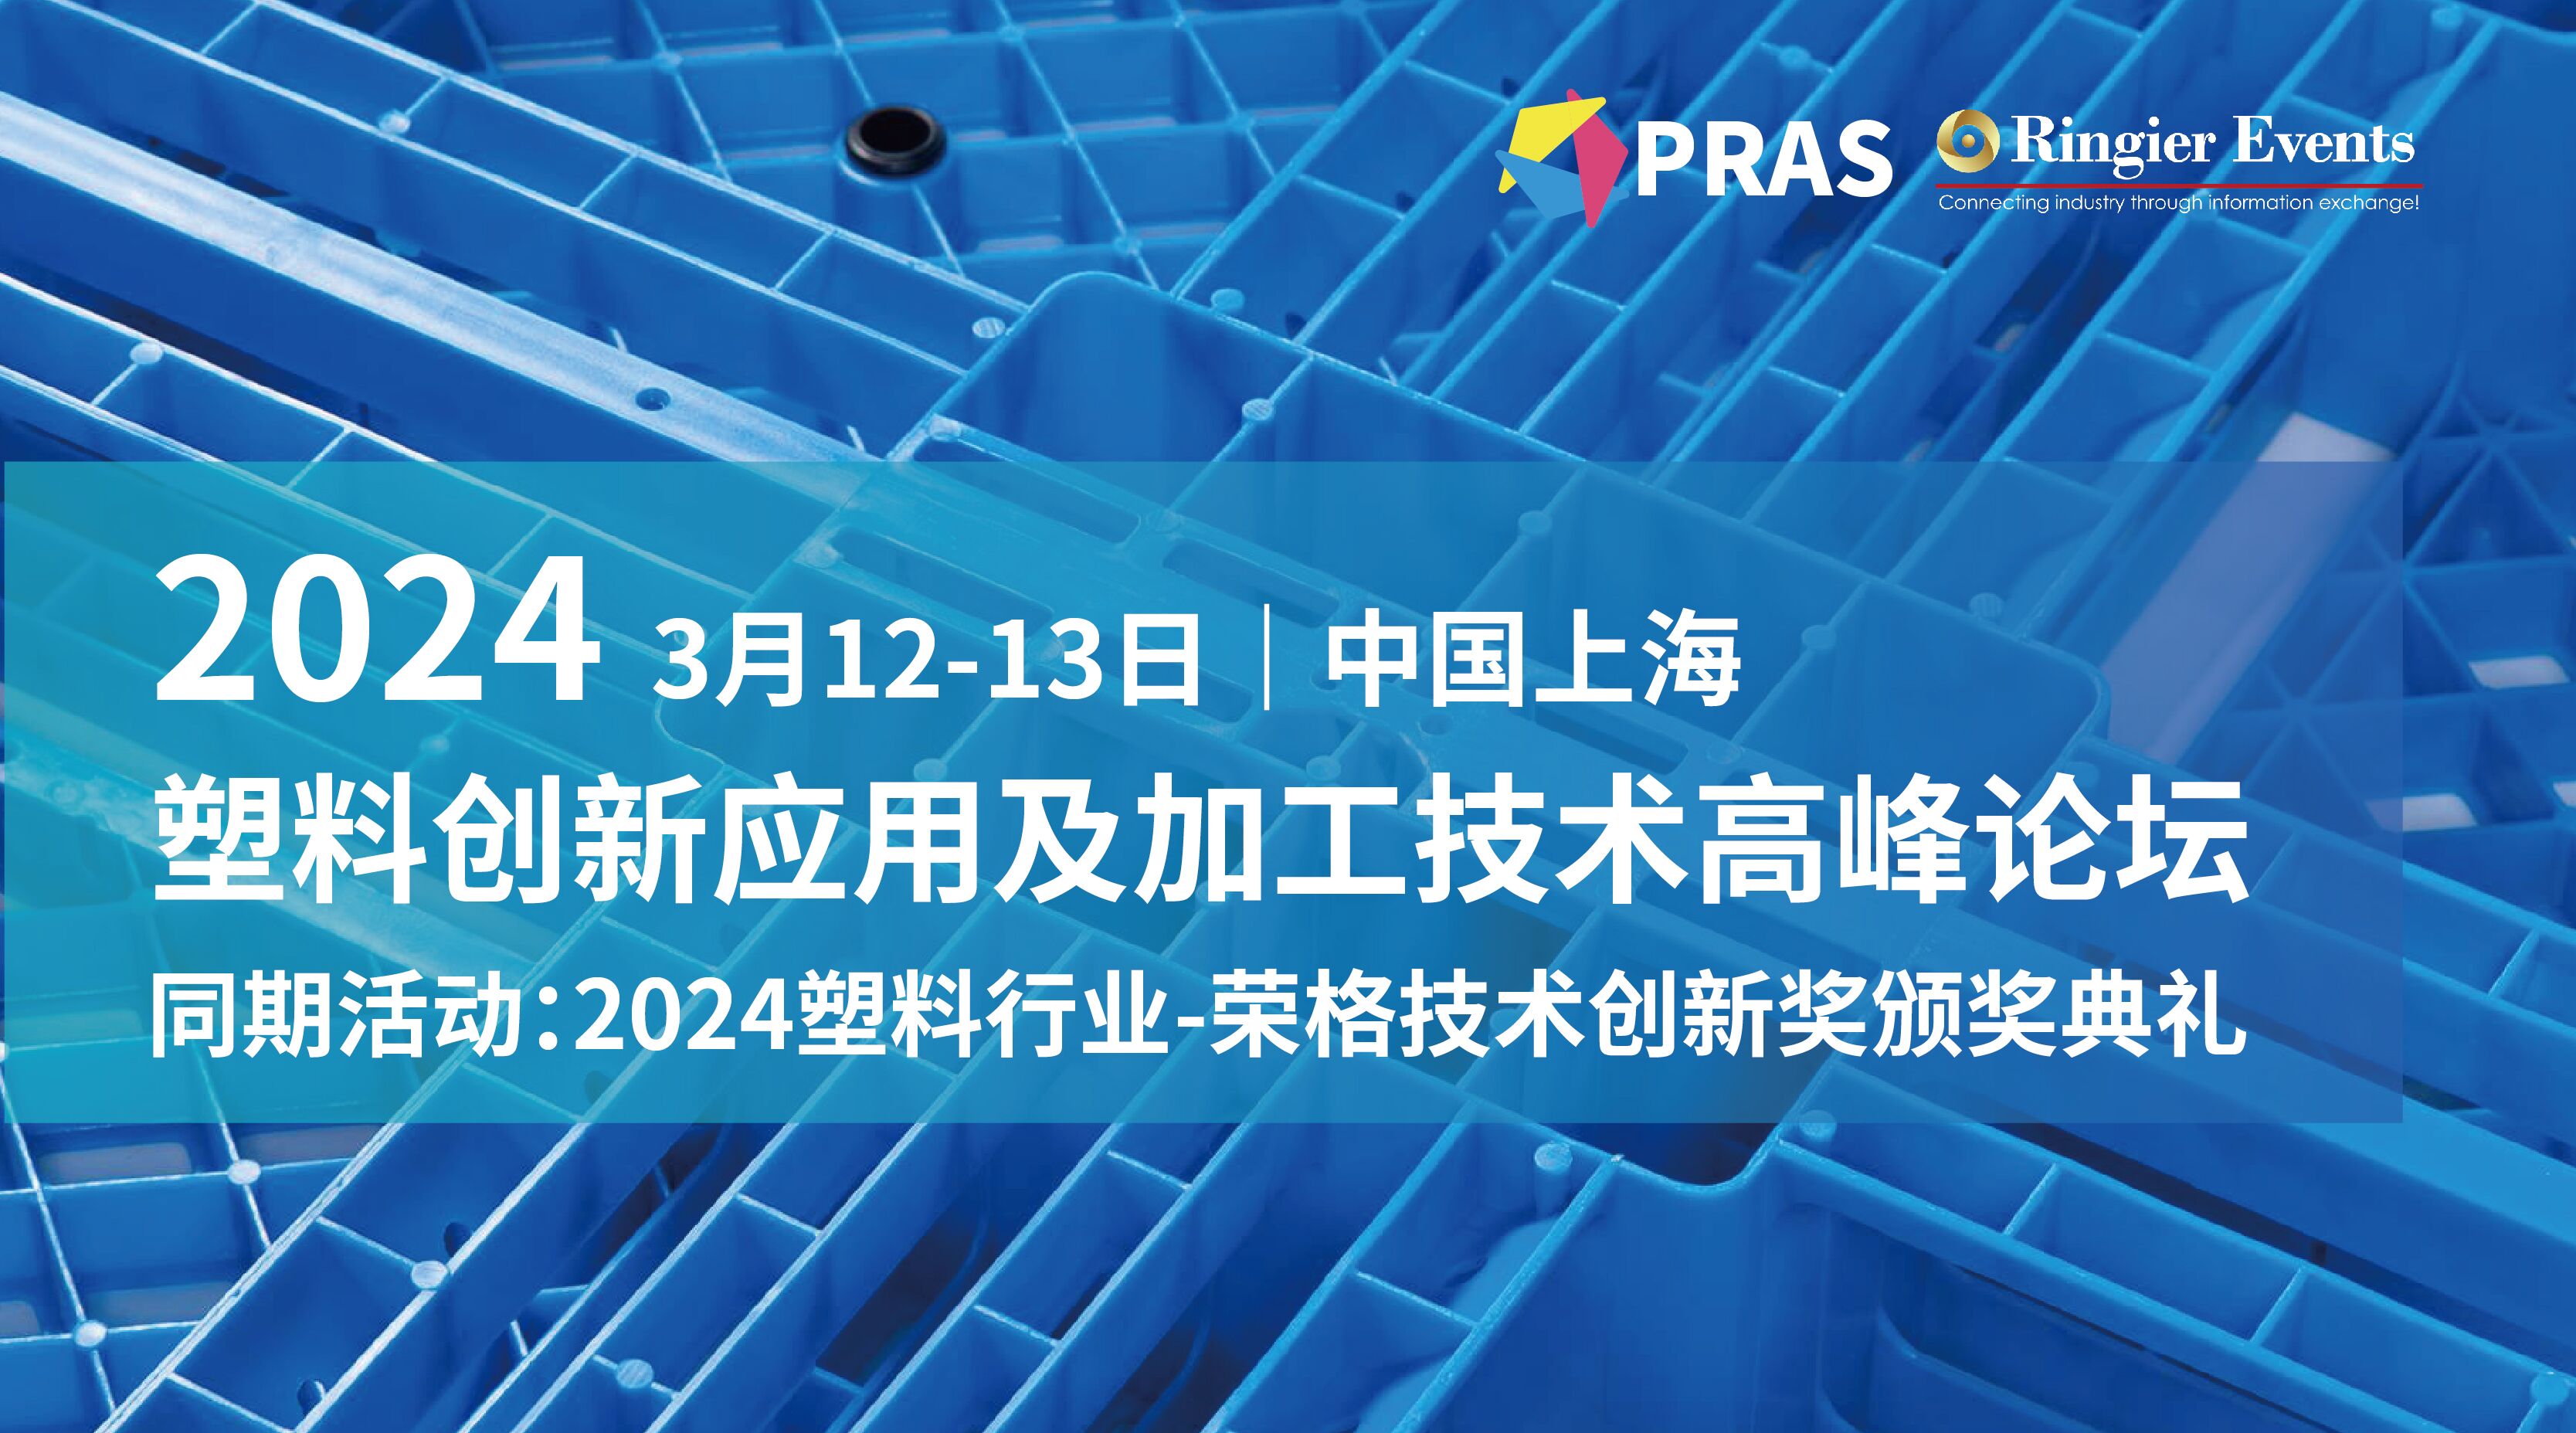 2024塑料创新应用及加工技术高峰论坛